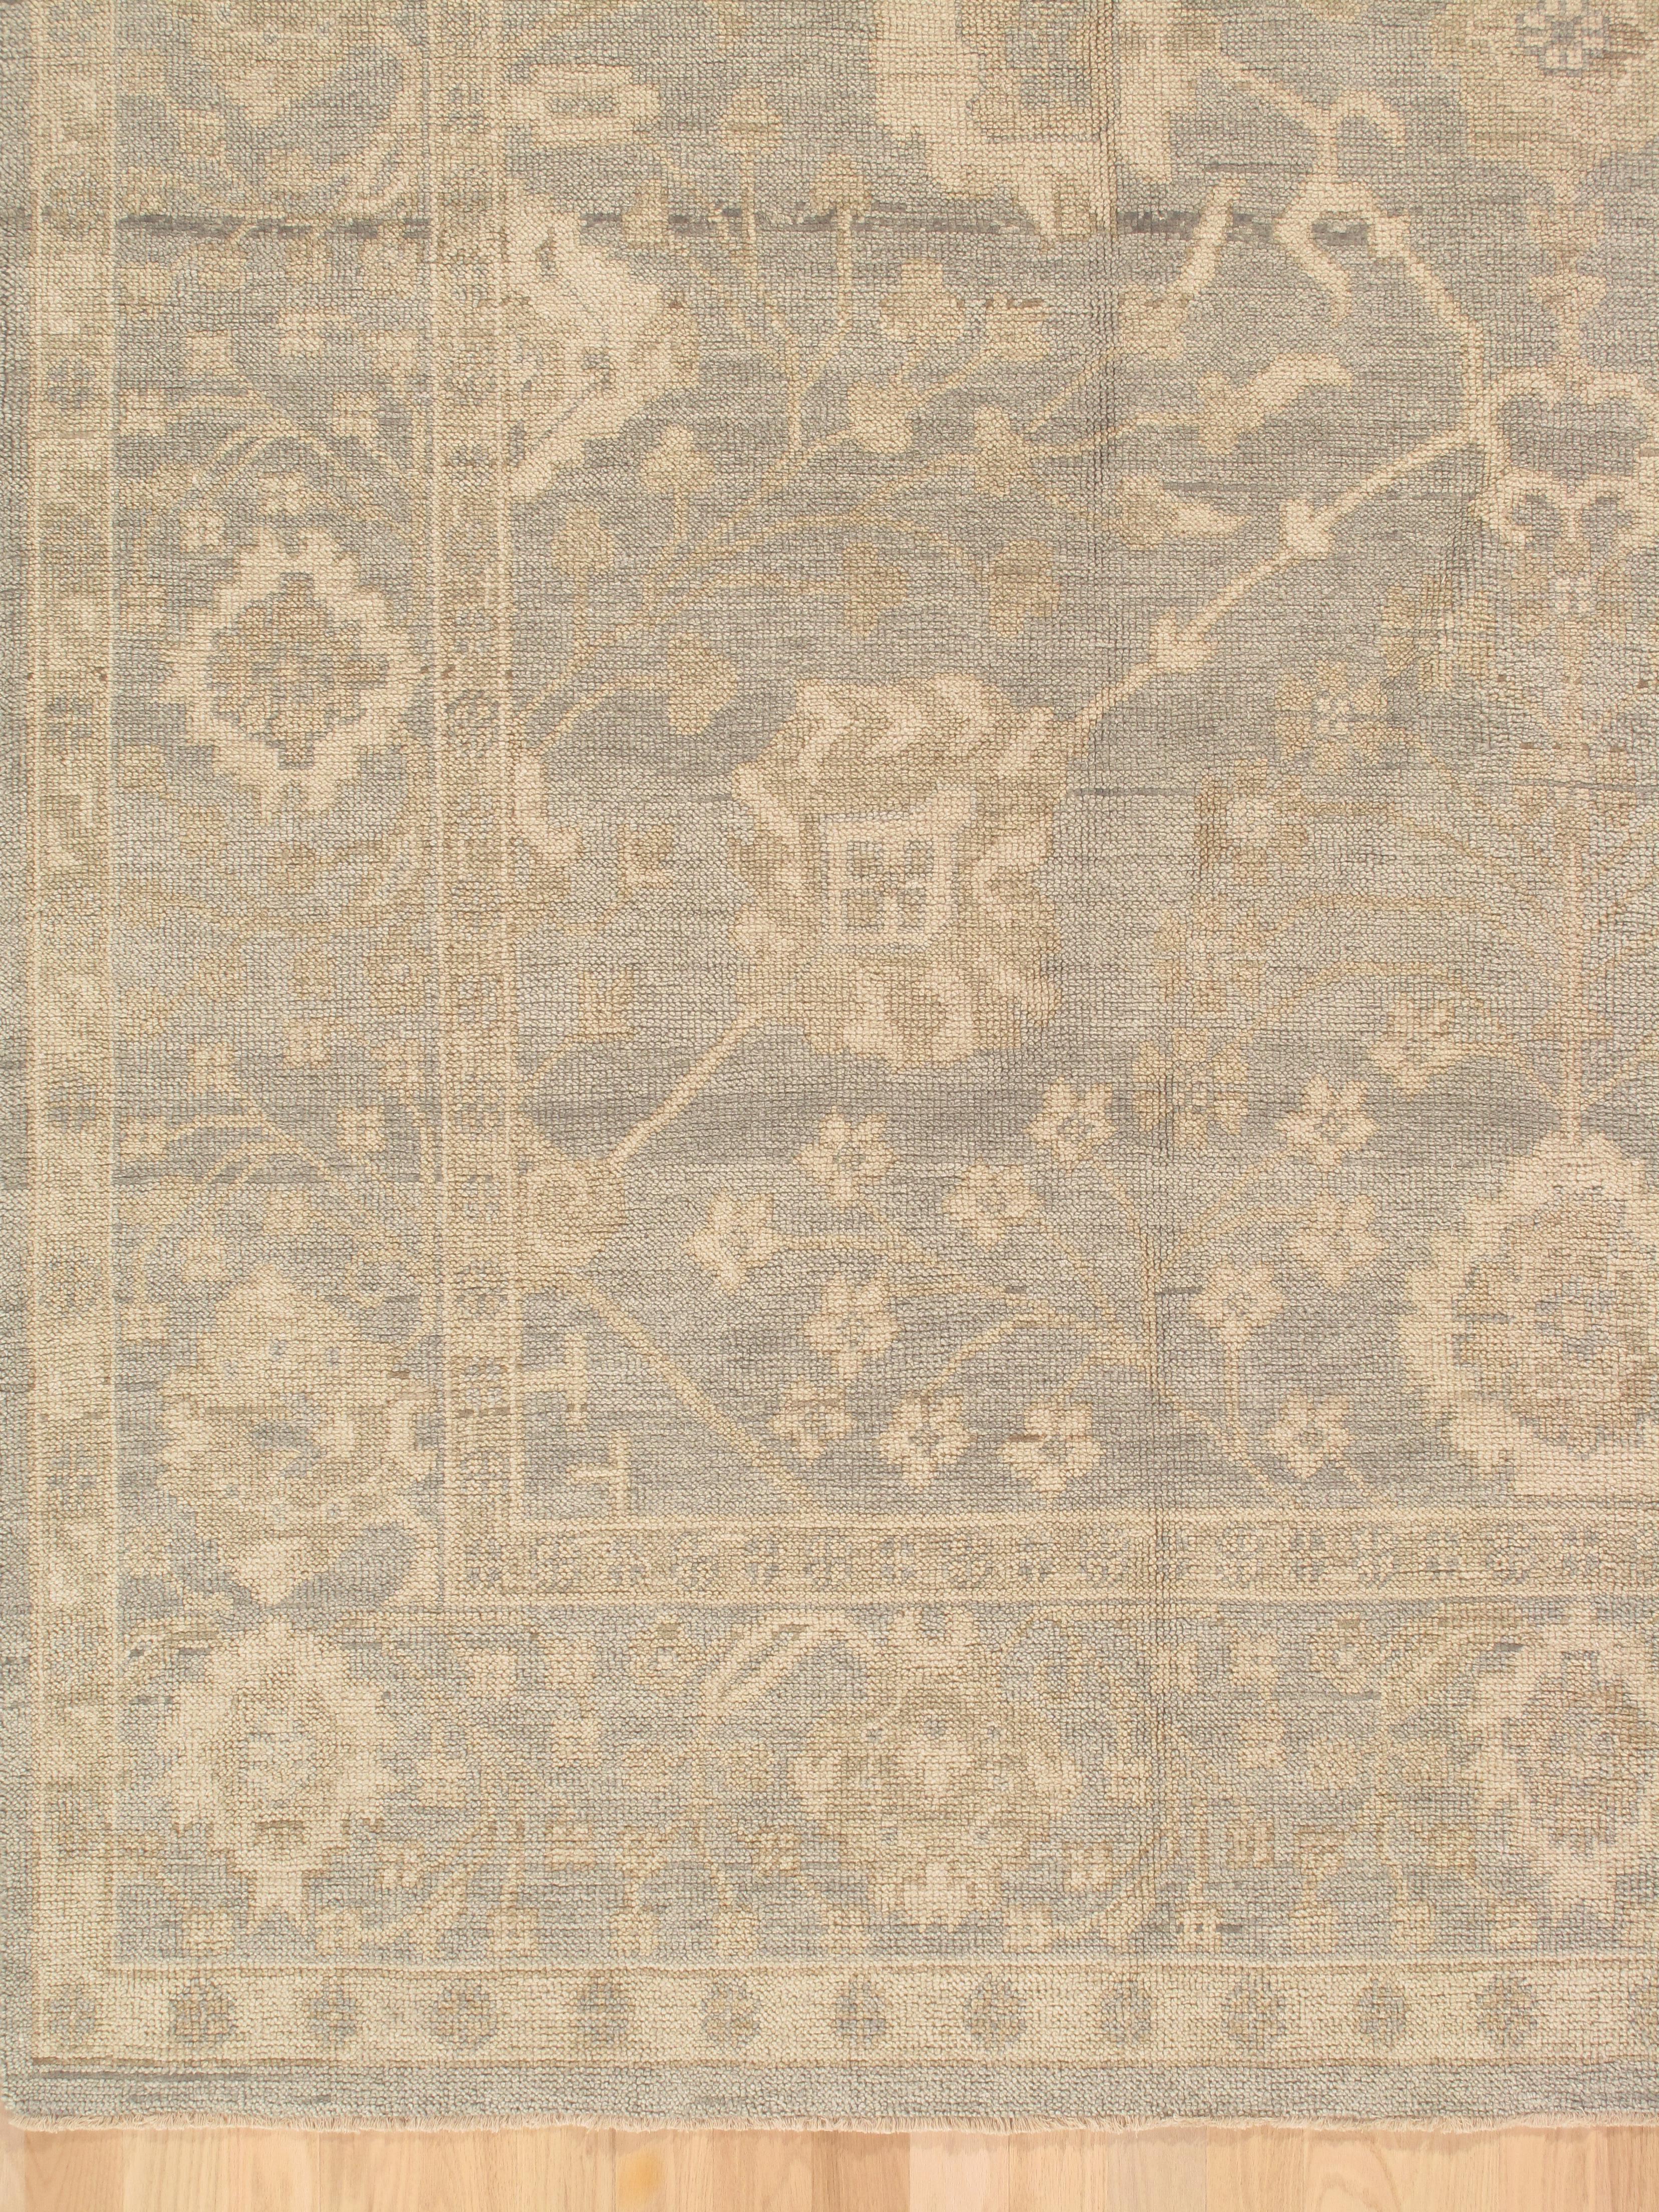 Vintage Oushak Carpet, Oriental Rug, Handmade Green Grey, Ivory, Saffron For Sale 1